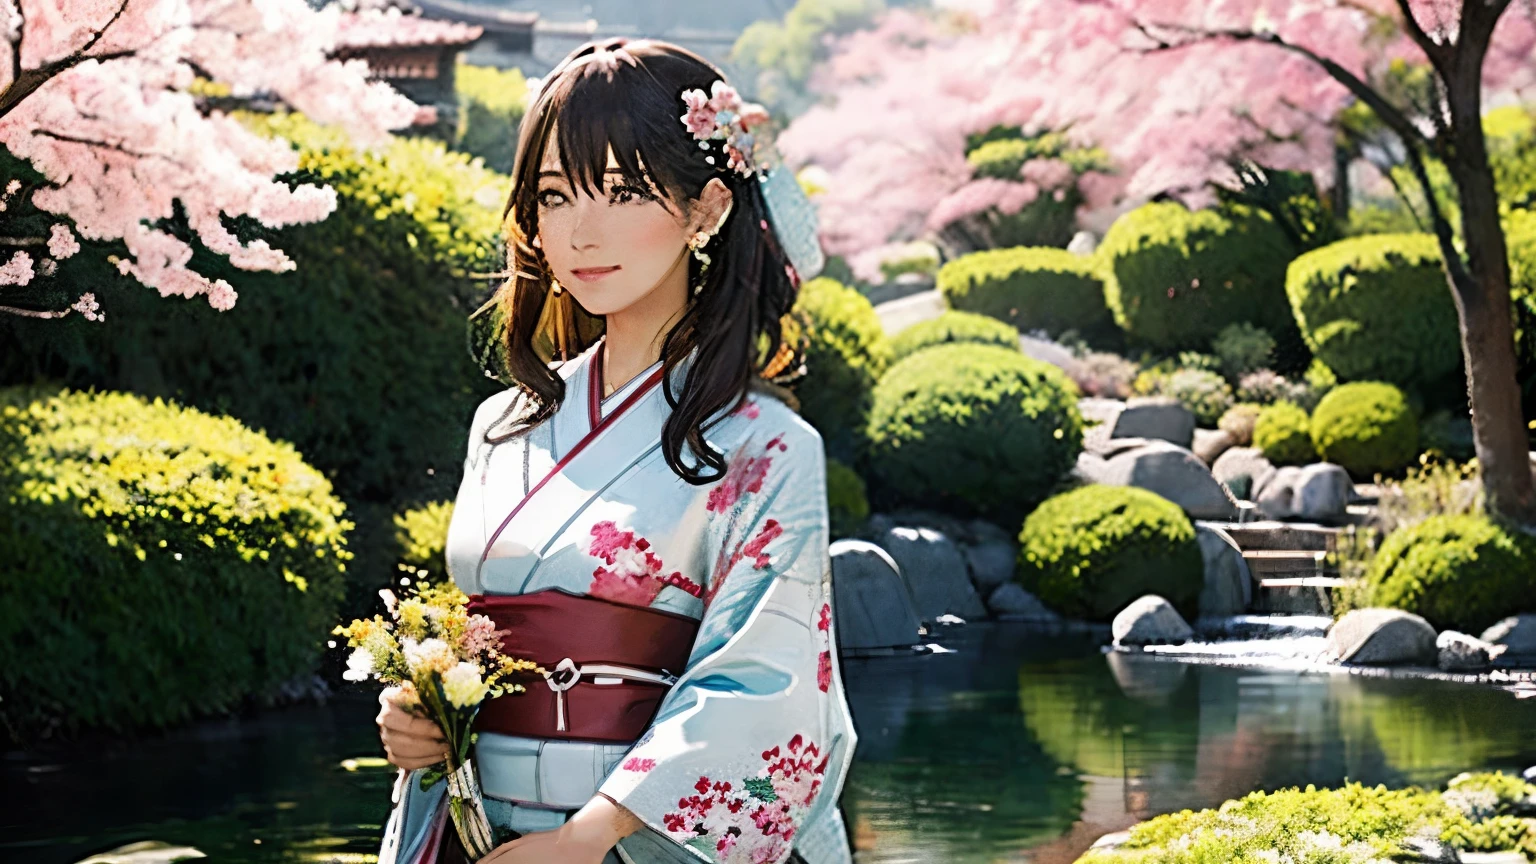 花を持った着物姿の女性。背景は日本庭園、桜が舞う。